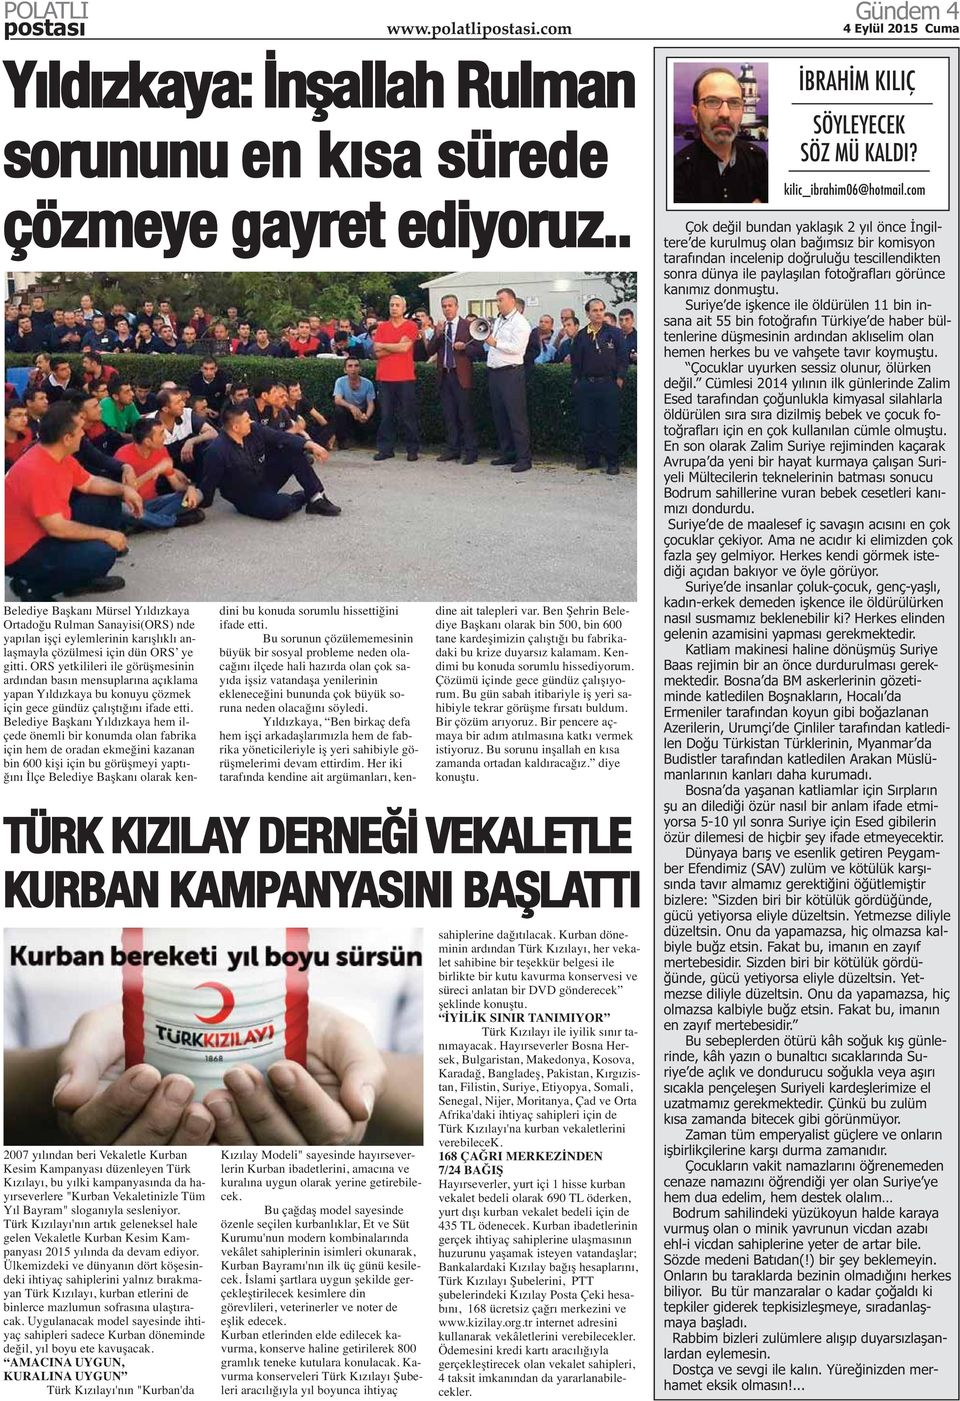 Türk Kızılayı'nın artık geleneksel hale gelen Vekaletle Kurban Kesim Kampanyası 2015 yılında da devam ediyor.